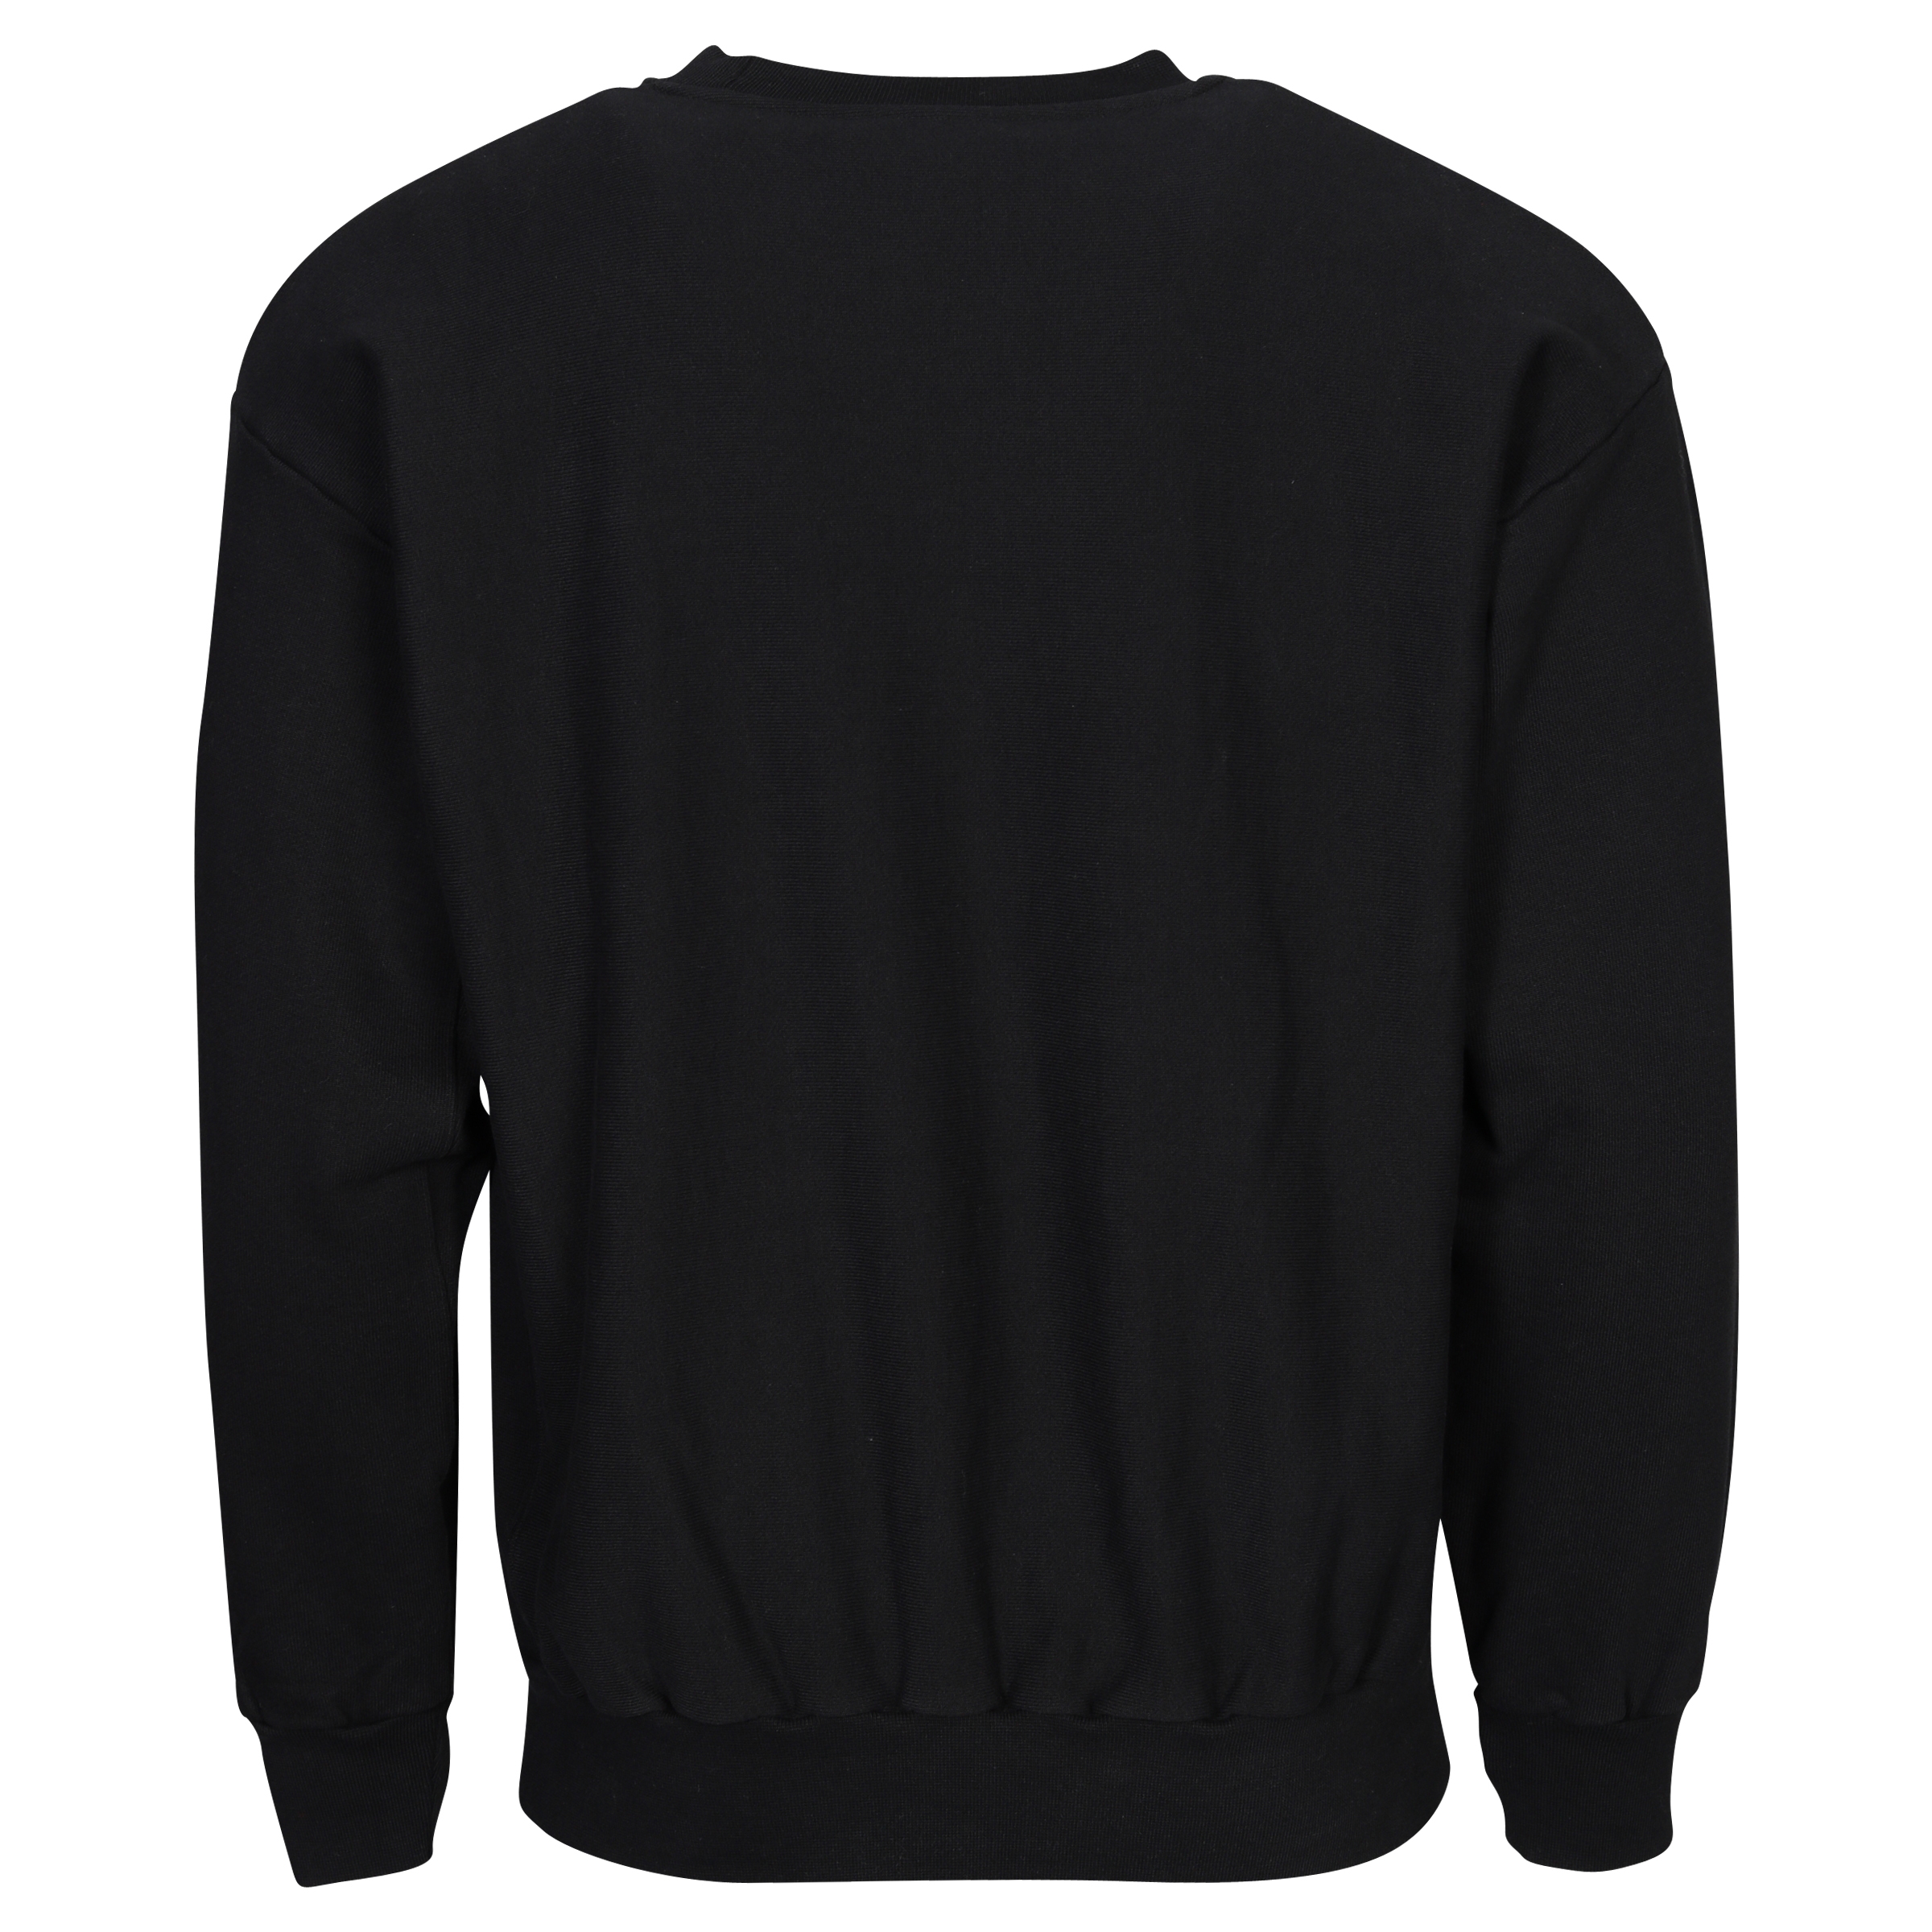 Unisex Aries Premium Temple Sweatshirt in Black